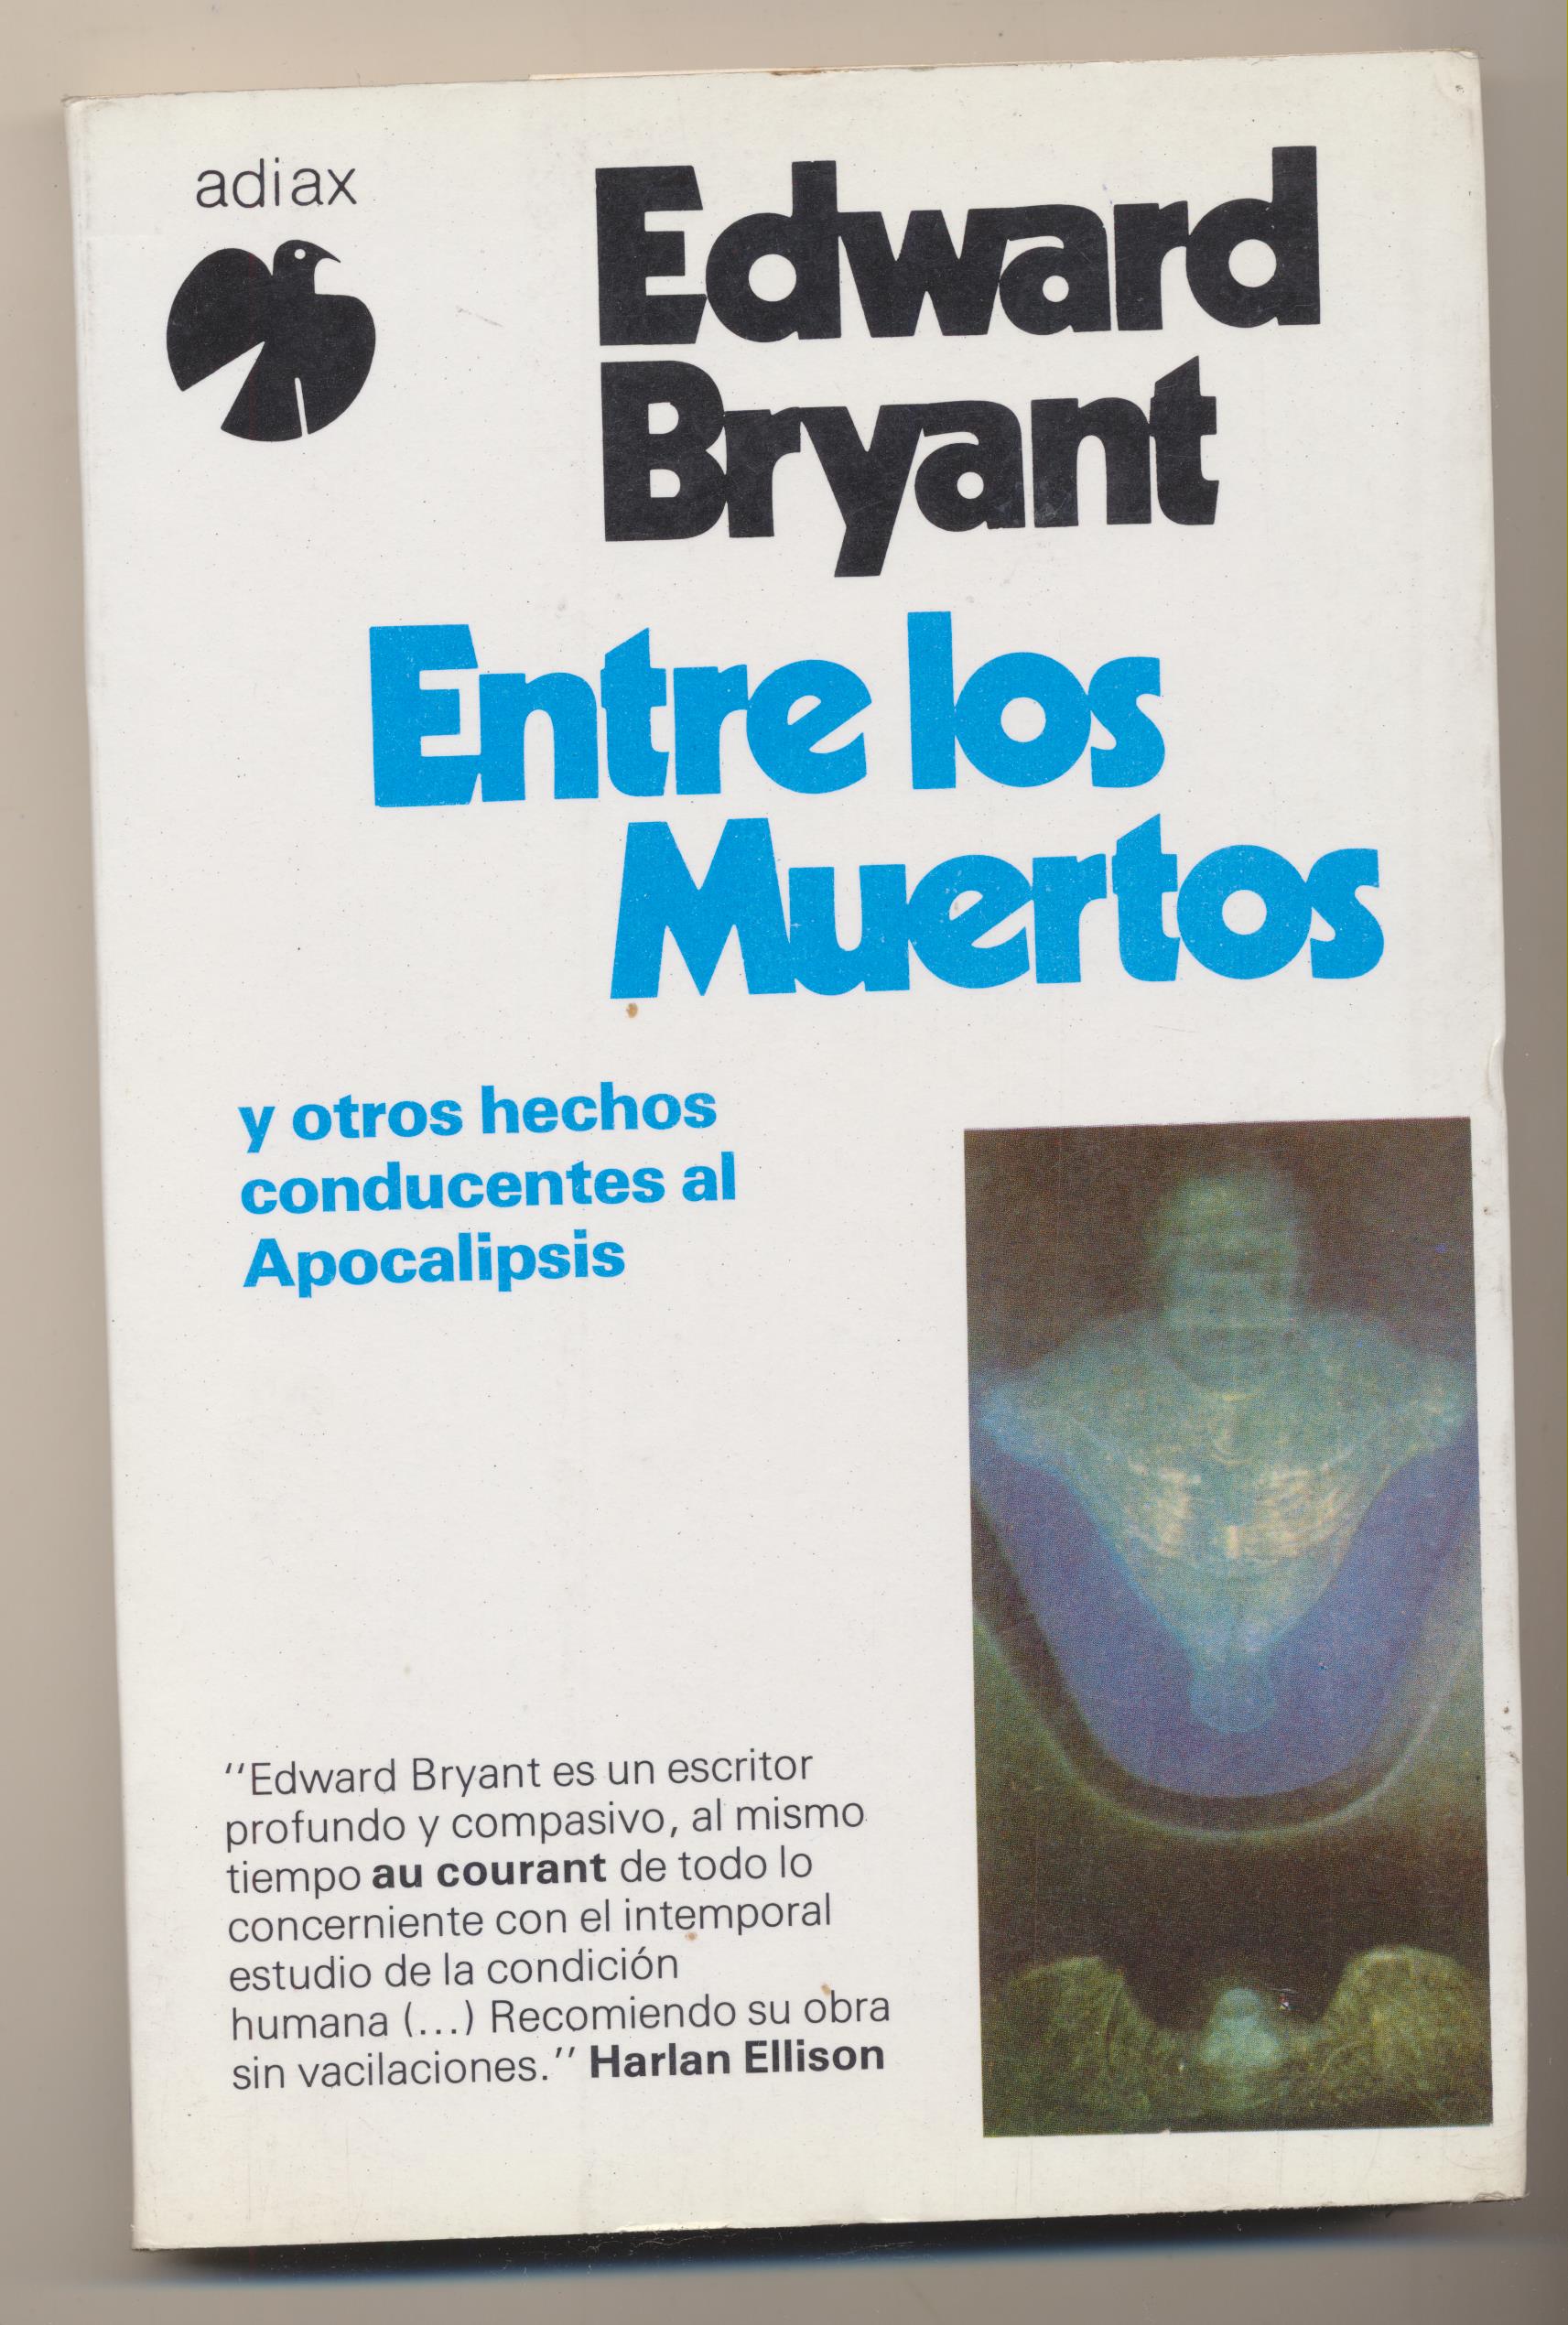 Edward Bryant. Entre los muertos. Adiax 1982. SIN USAR